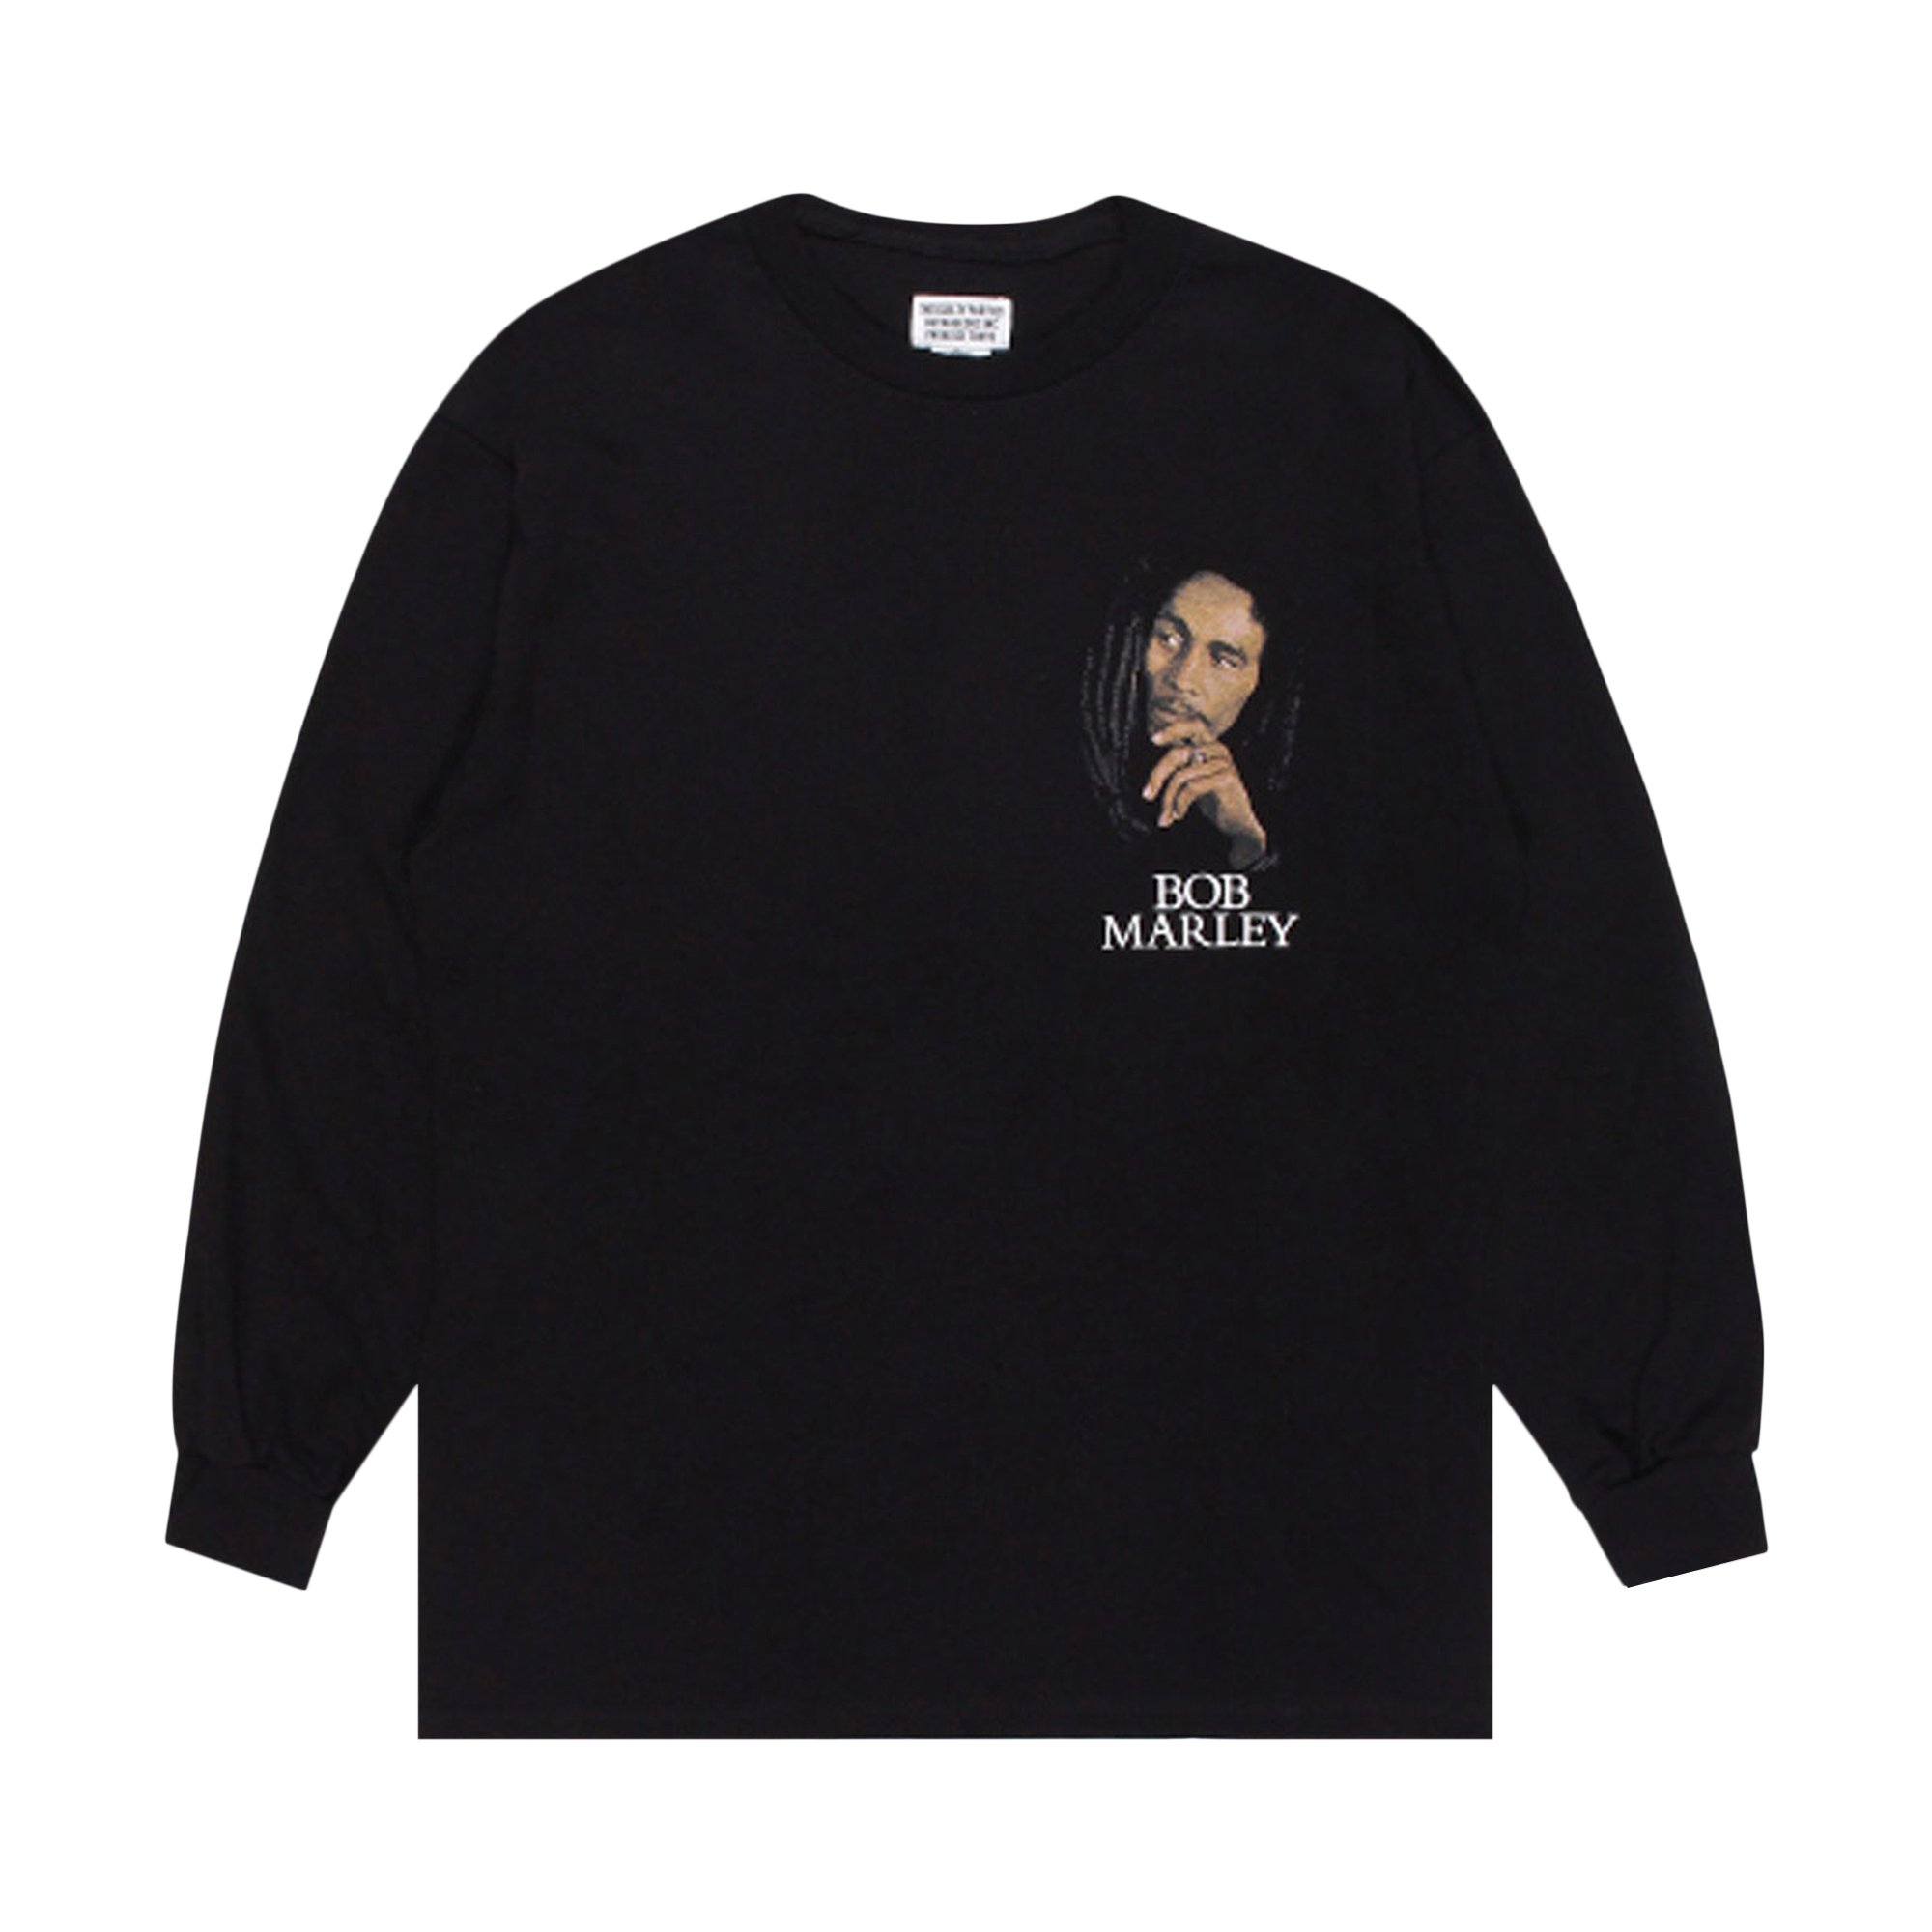 Buy Wacko Maria x Bob Marley Crewneck Long-Sleeve T-Shirt 'Black